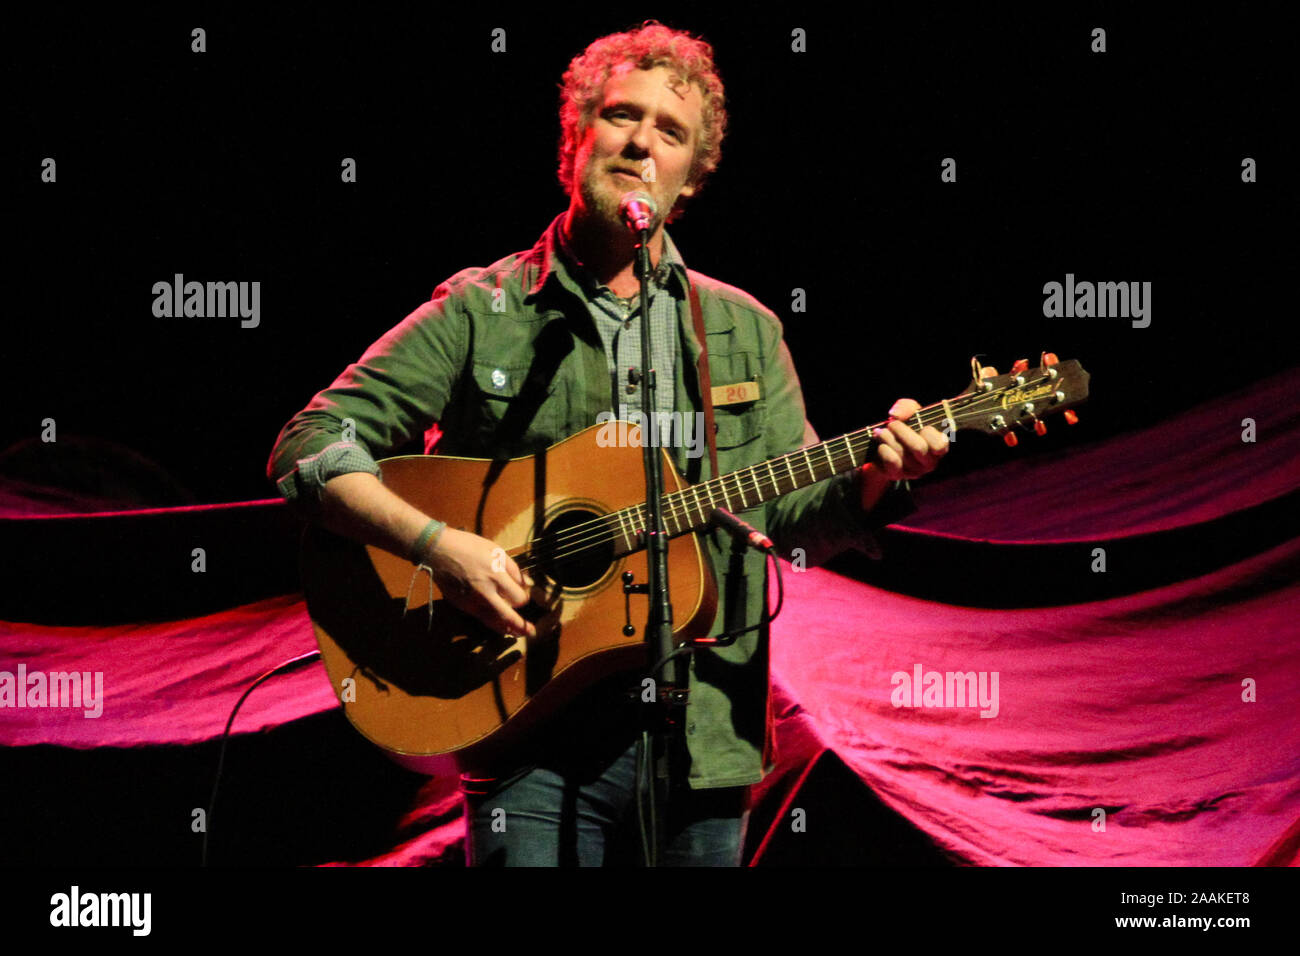 RIO DE JANEIRO, 11.05.2014 - O músico irlandês Glen Hansard fez a abertura e participou em algumas músicas no palco junto com Eddie Vedder no Citibank Stock Photo